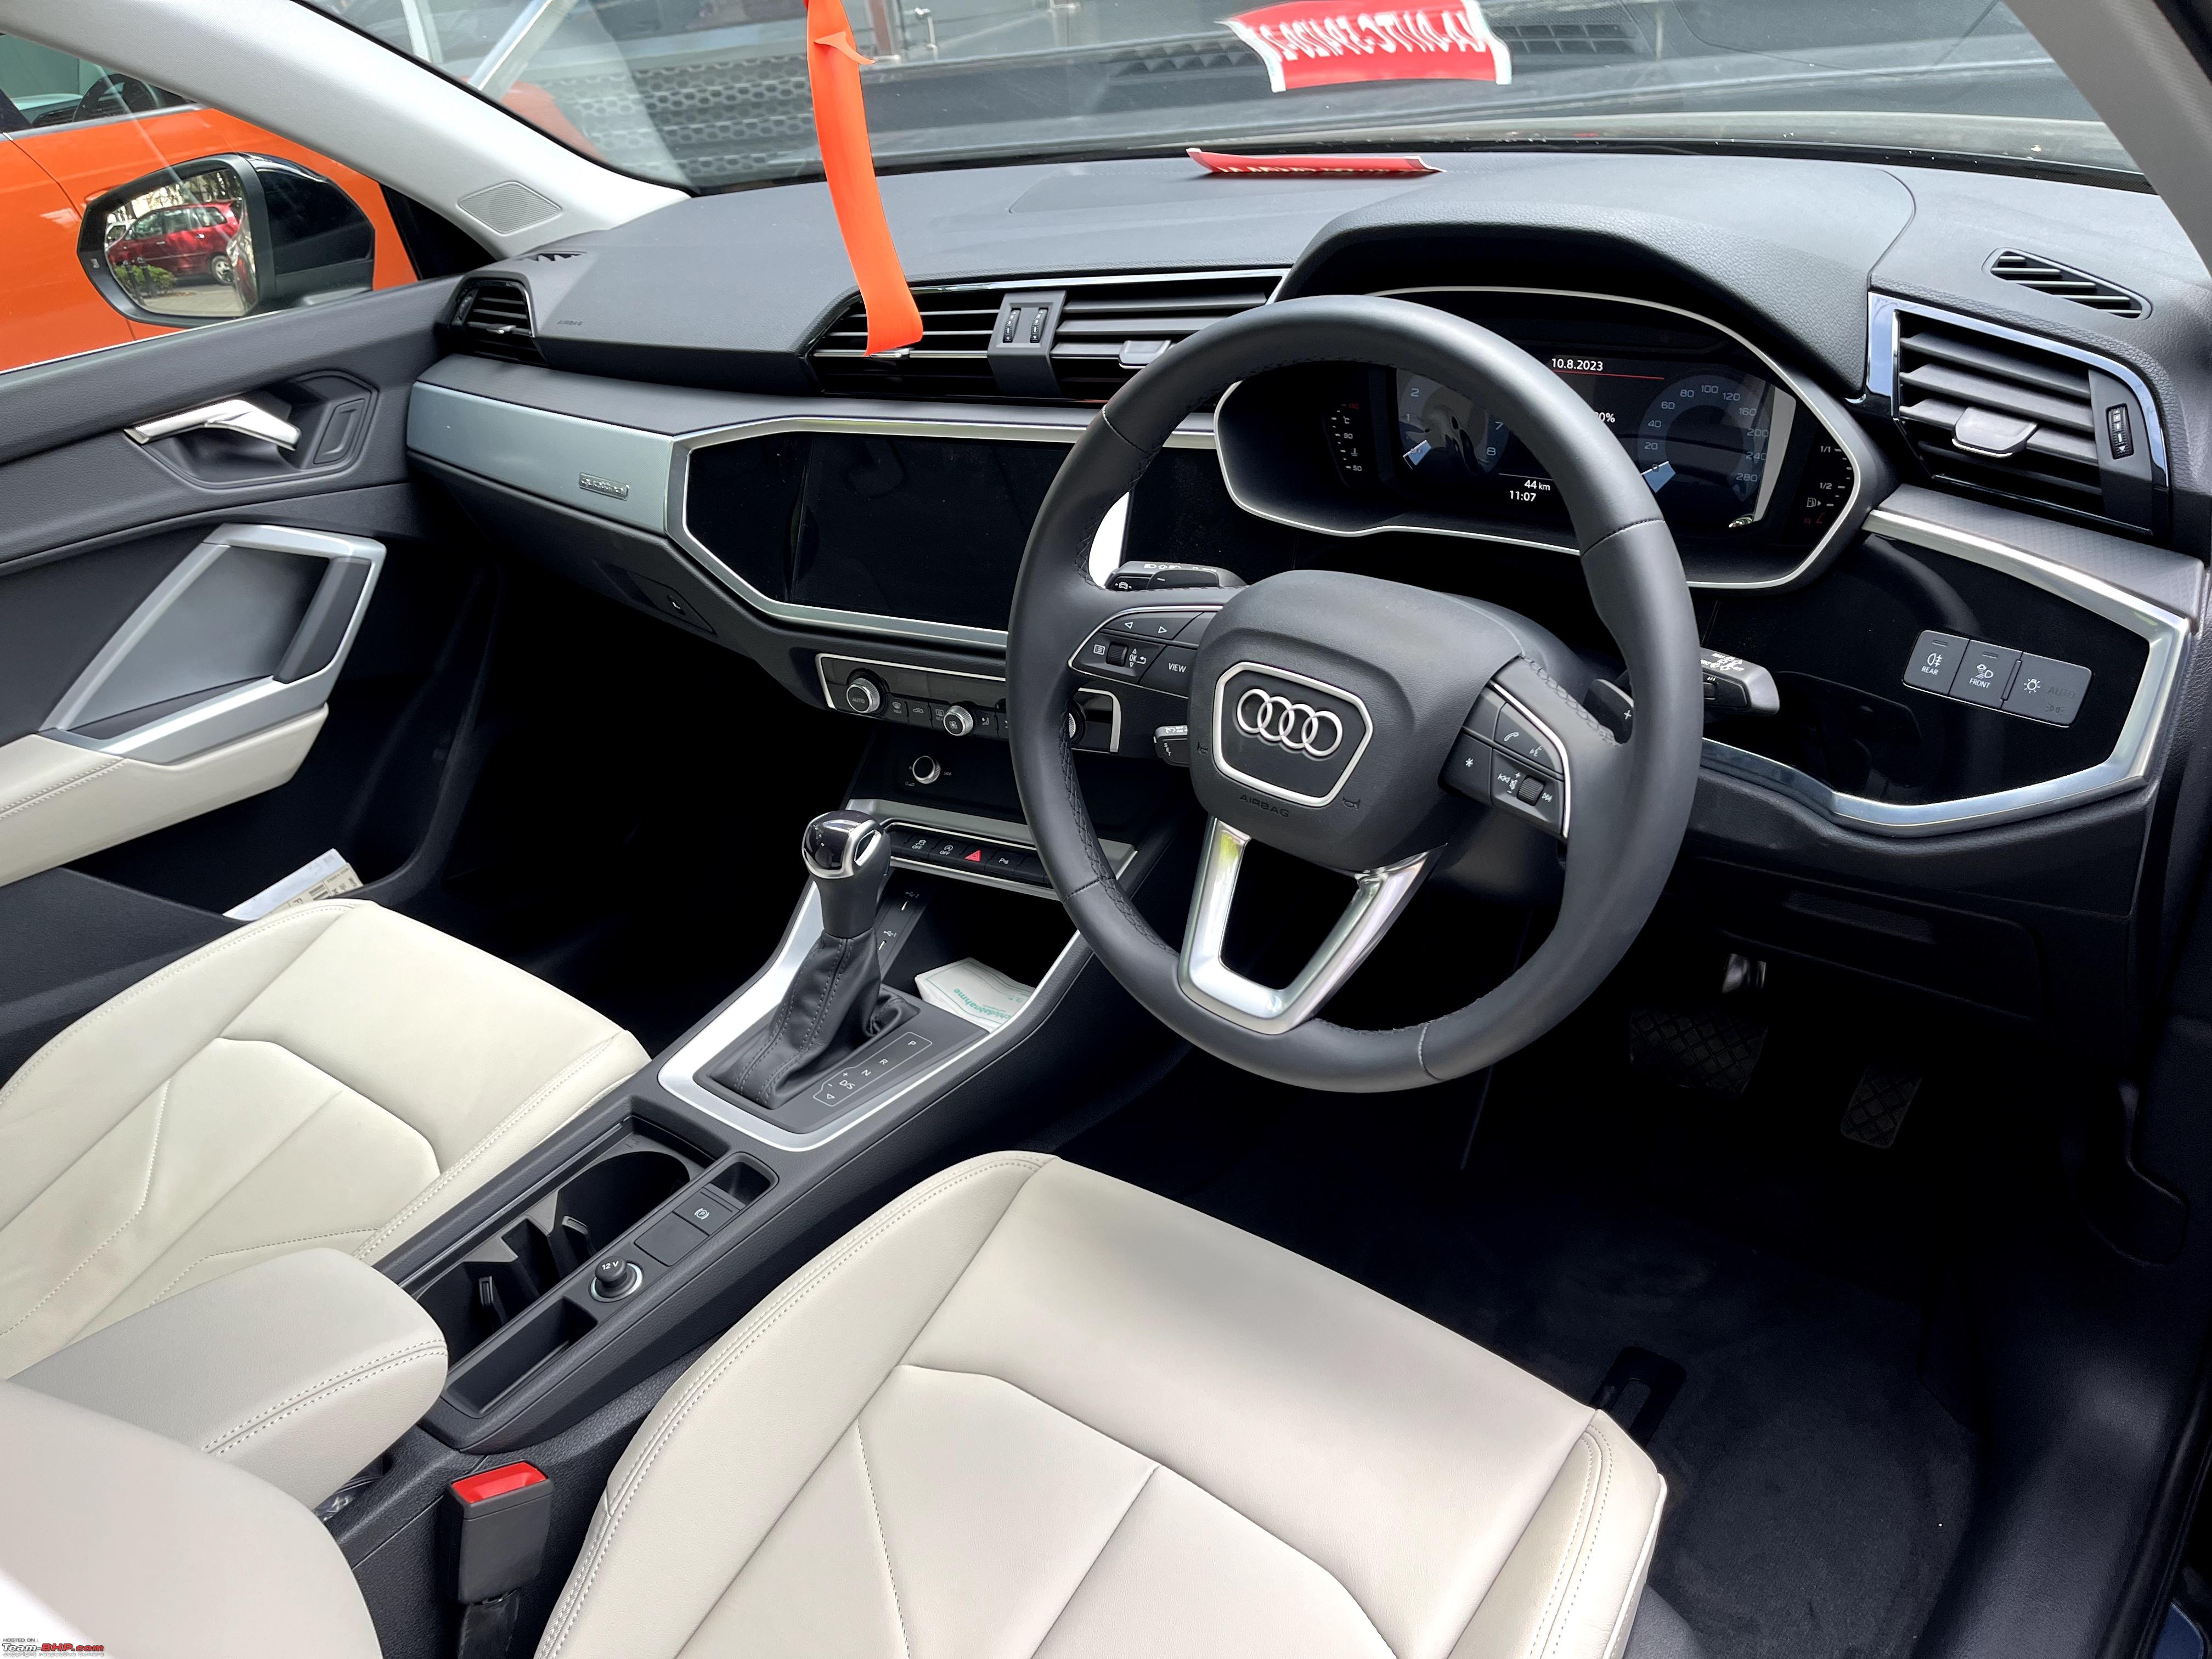 Audi Q3 - Consumer Reports